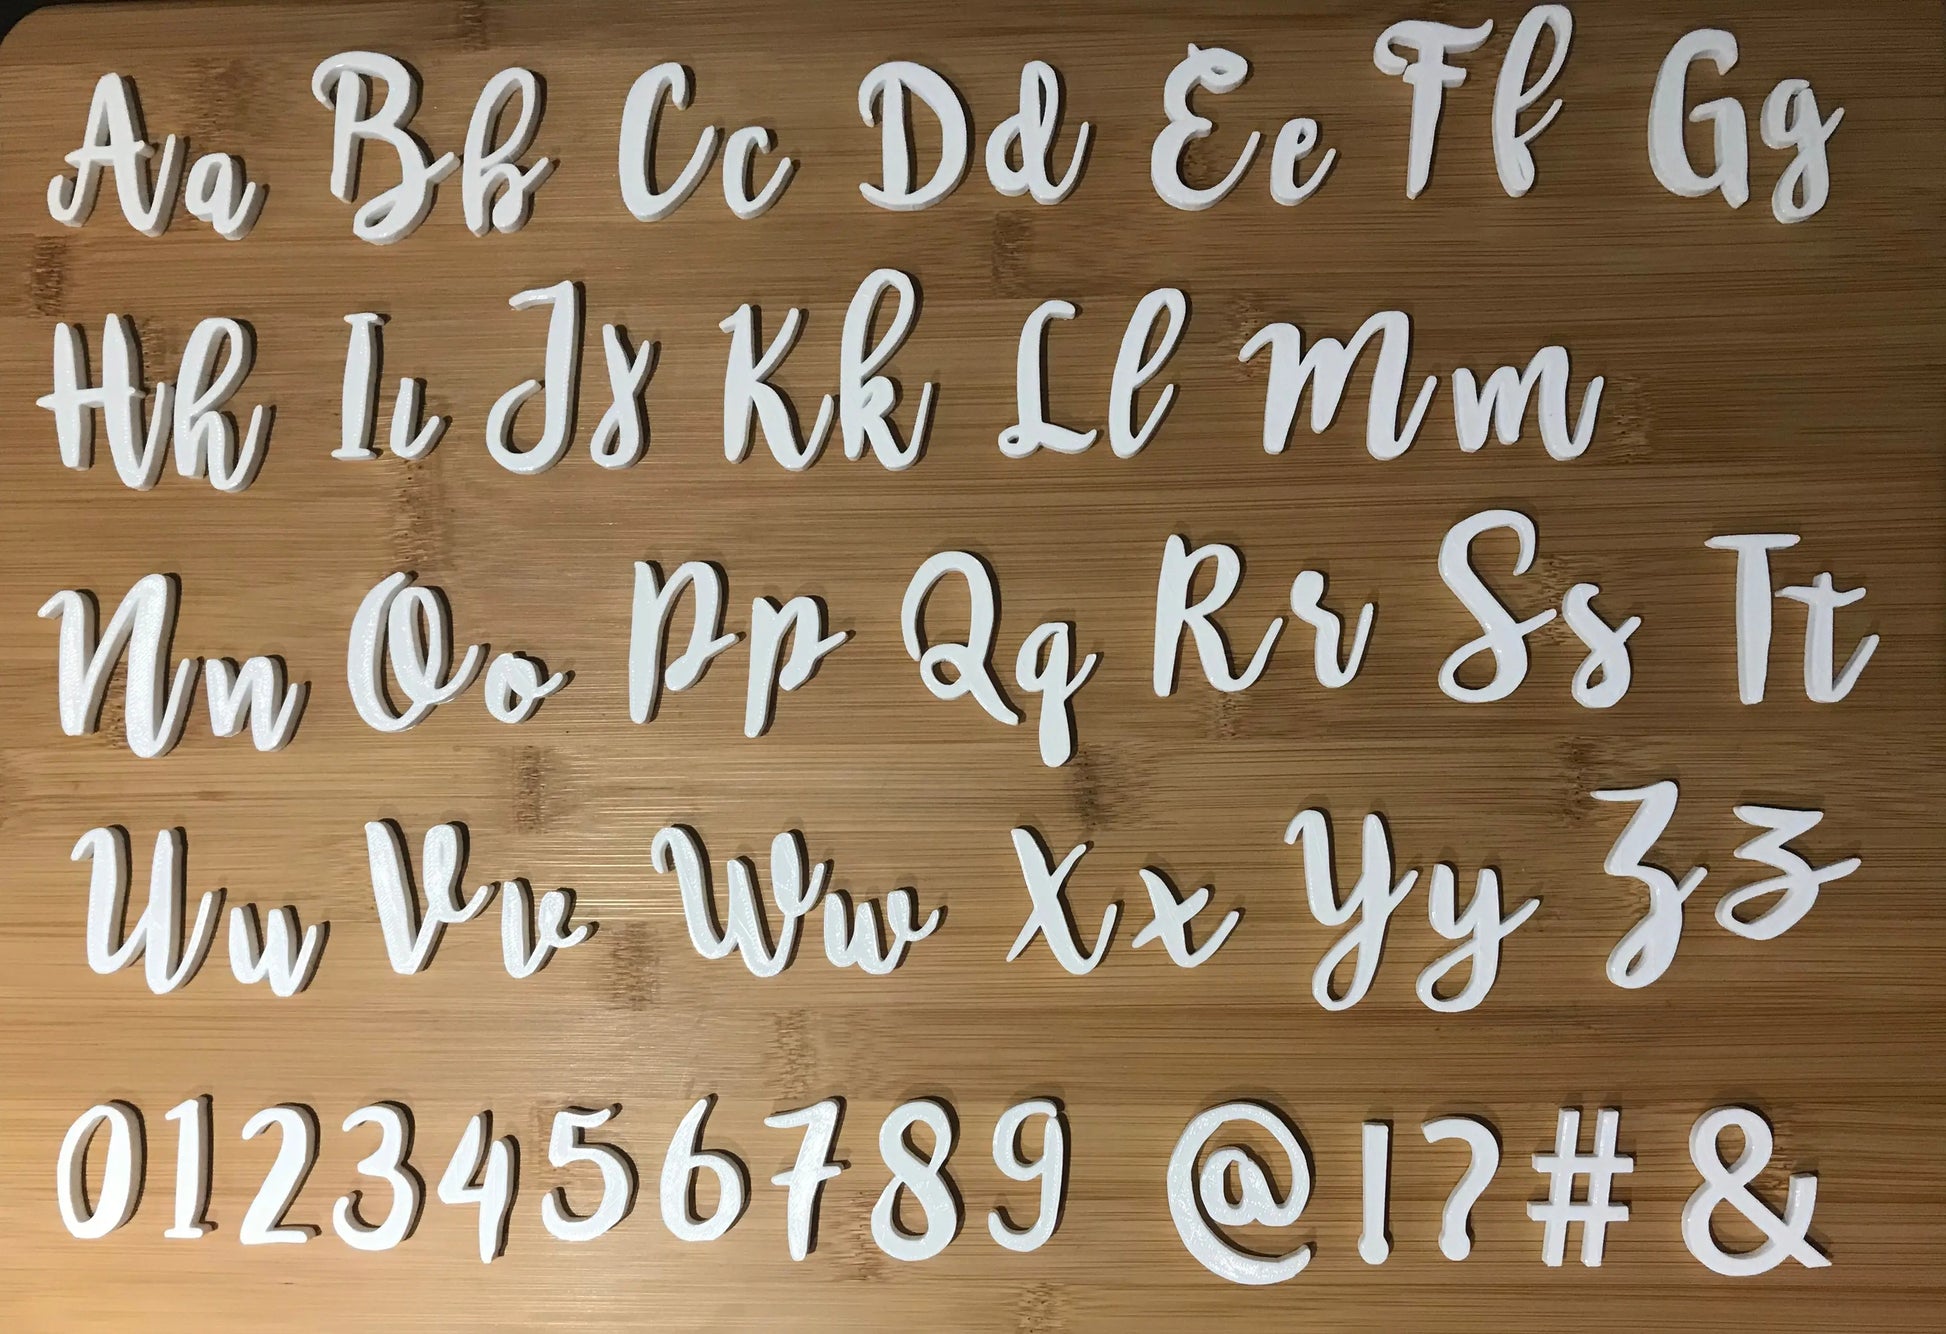 ‘EMILY 4’ BROMELLO Font full Alphabet Stamp - Fondant Embosser Cake MEG cookie cutters